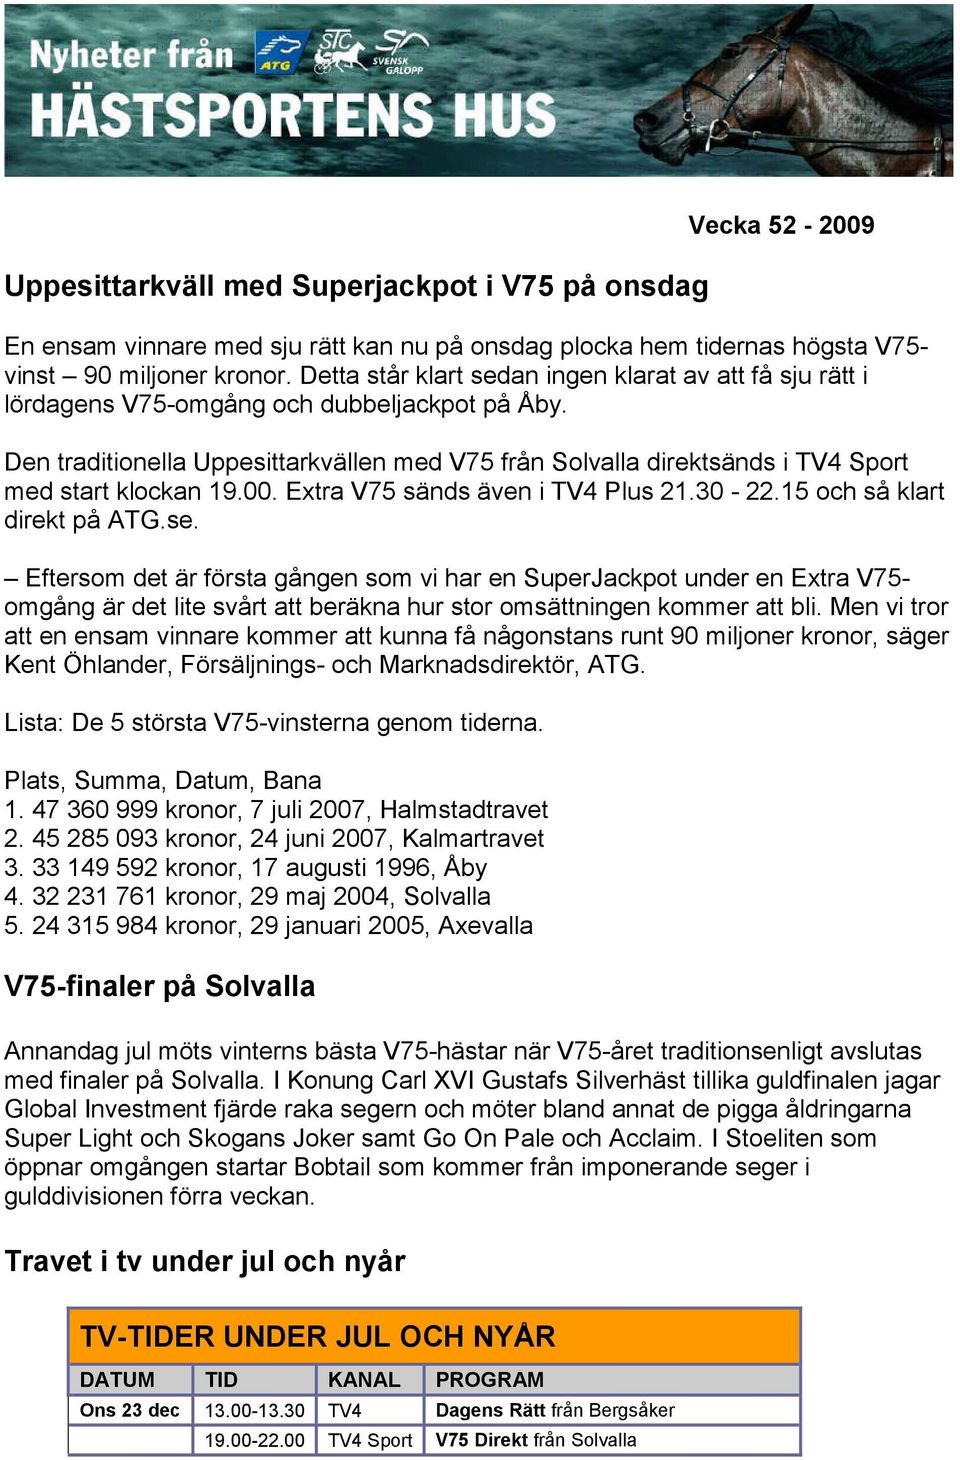 Den traditionella Uppesittarkvällen med V75 från Solvalla direktsänds i TV4 Sport med start klockan 19.00. Extra V75 sänds även i TV4 Plus 21.30-22.15 och så klart direkt på ATG.se.